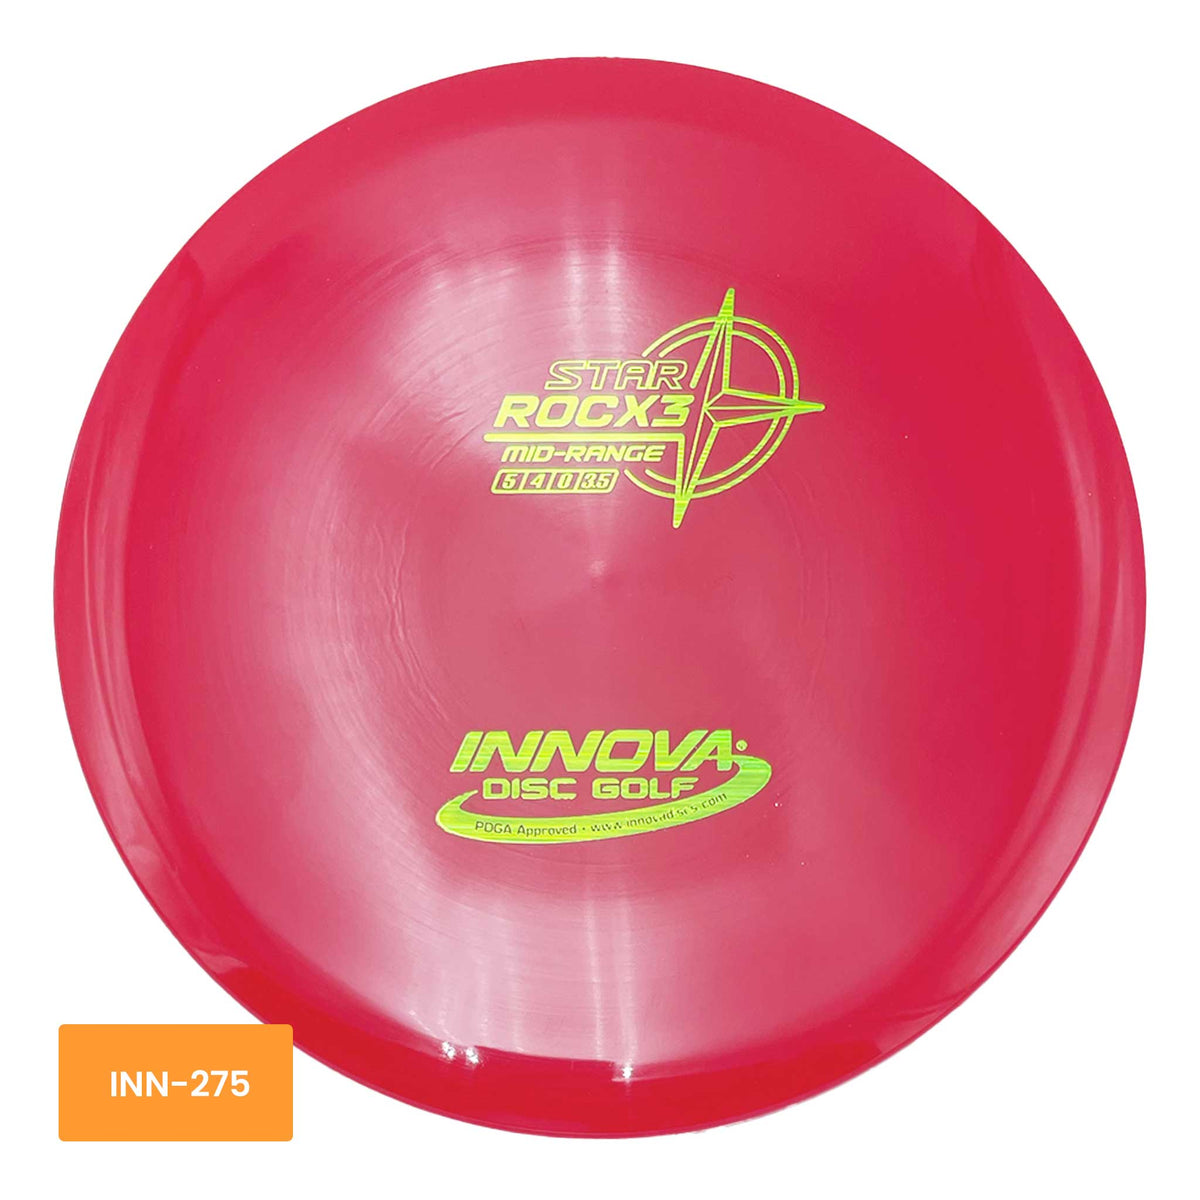 Innova Disc Golf Star RocX3 midrange